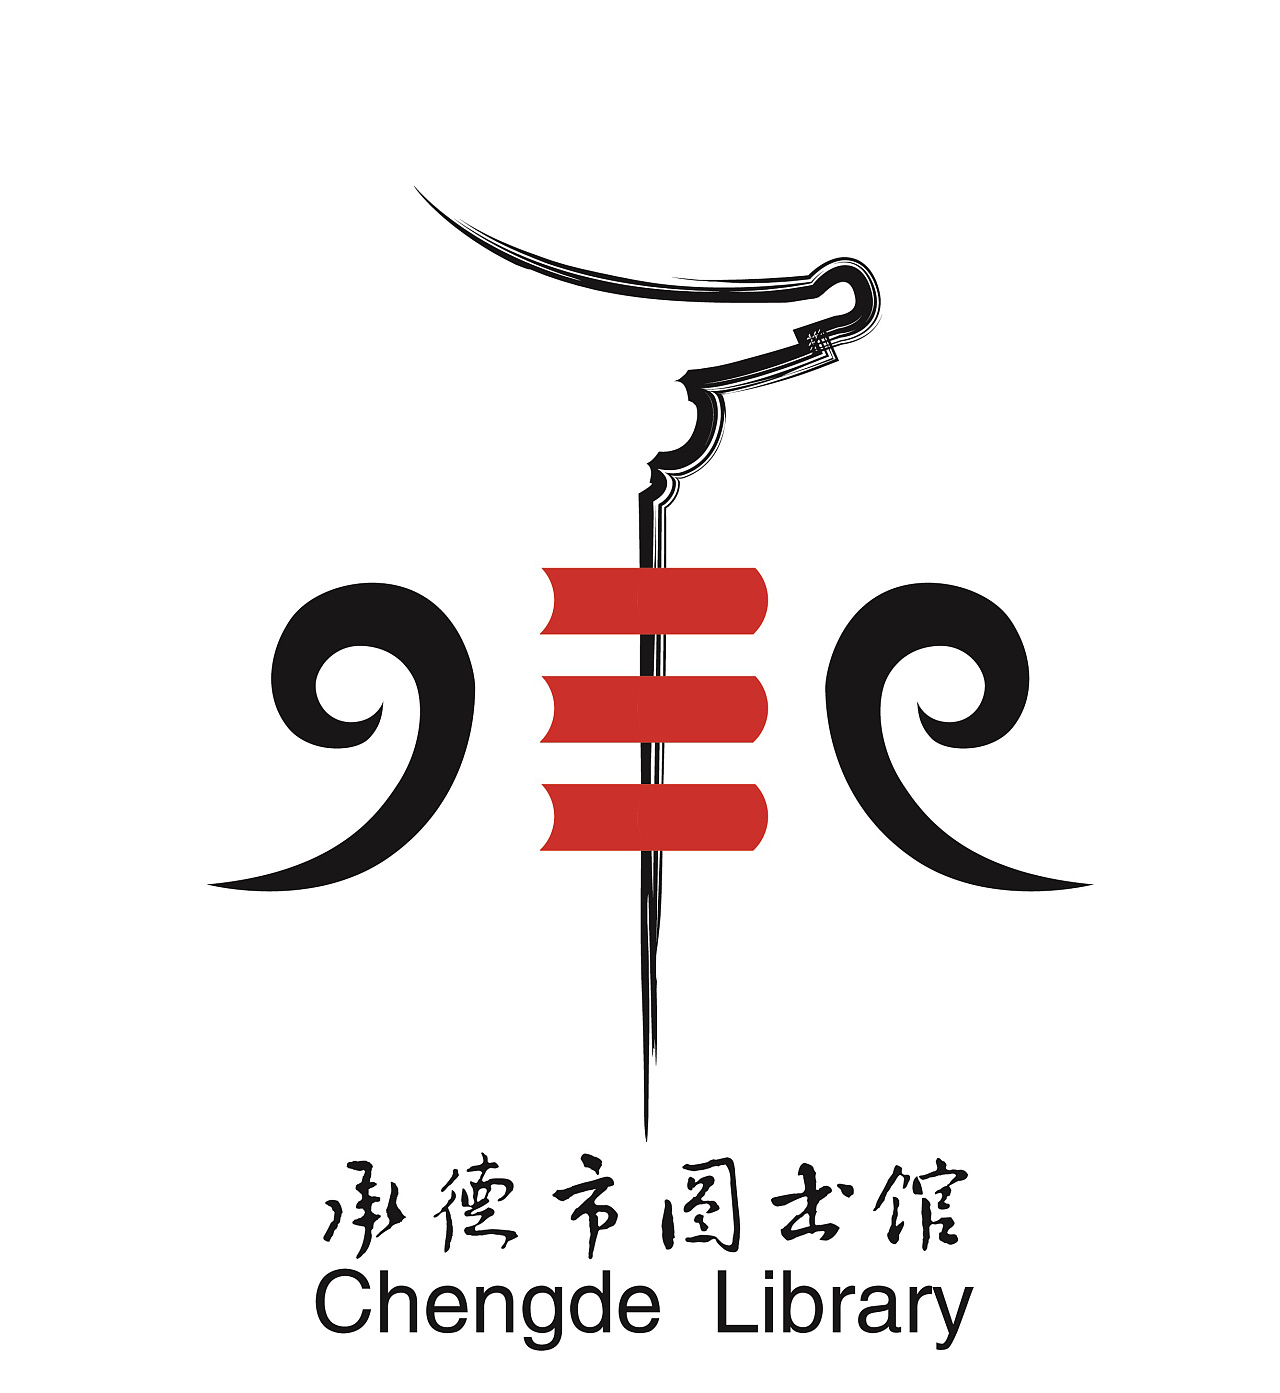 承德图书馆标志设计